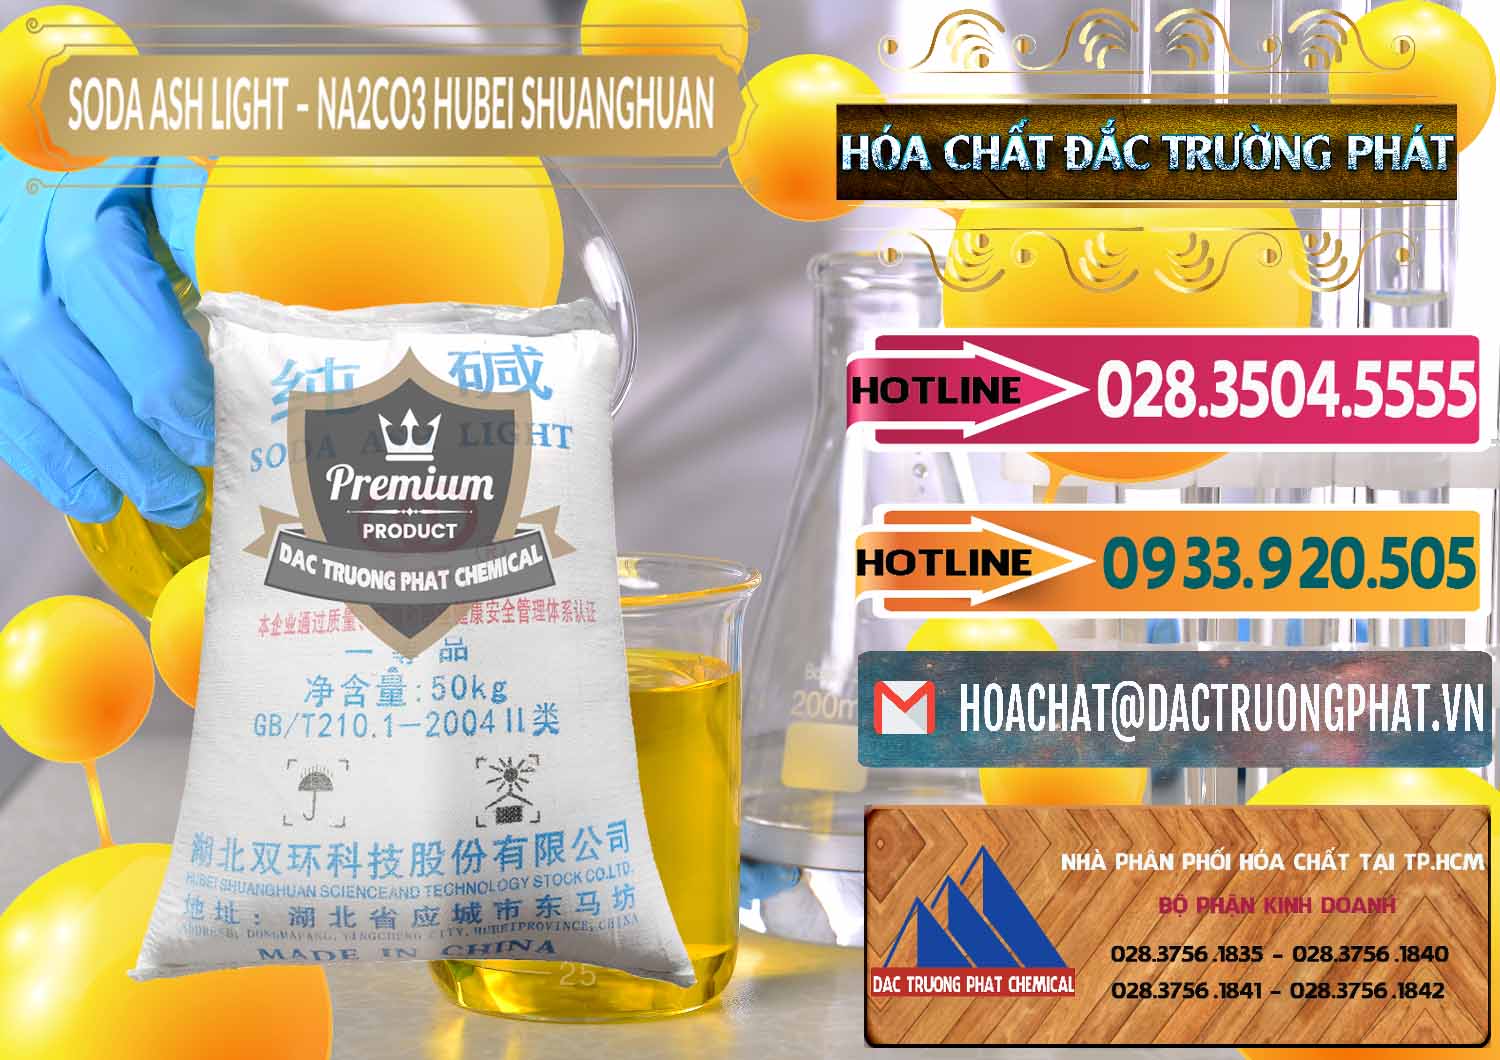 Cty chuyên kinh doanh & bán Soda Ash Light - NA2CO3 2 Vòng Tròn Hubei Shuanghuan Trung Quốc China - 0130 - Nhà cung ứng _ phân phối hóa chất tại TP.HCM - dactruongphat.vn